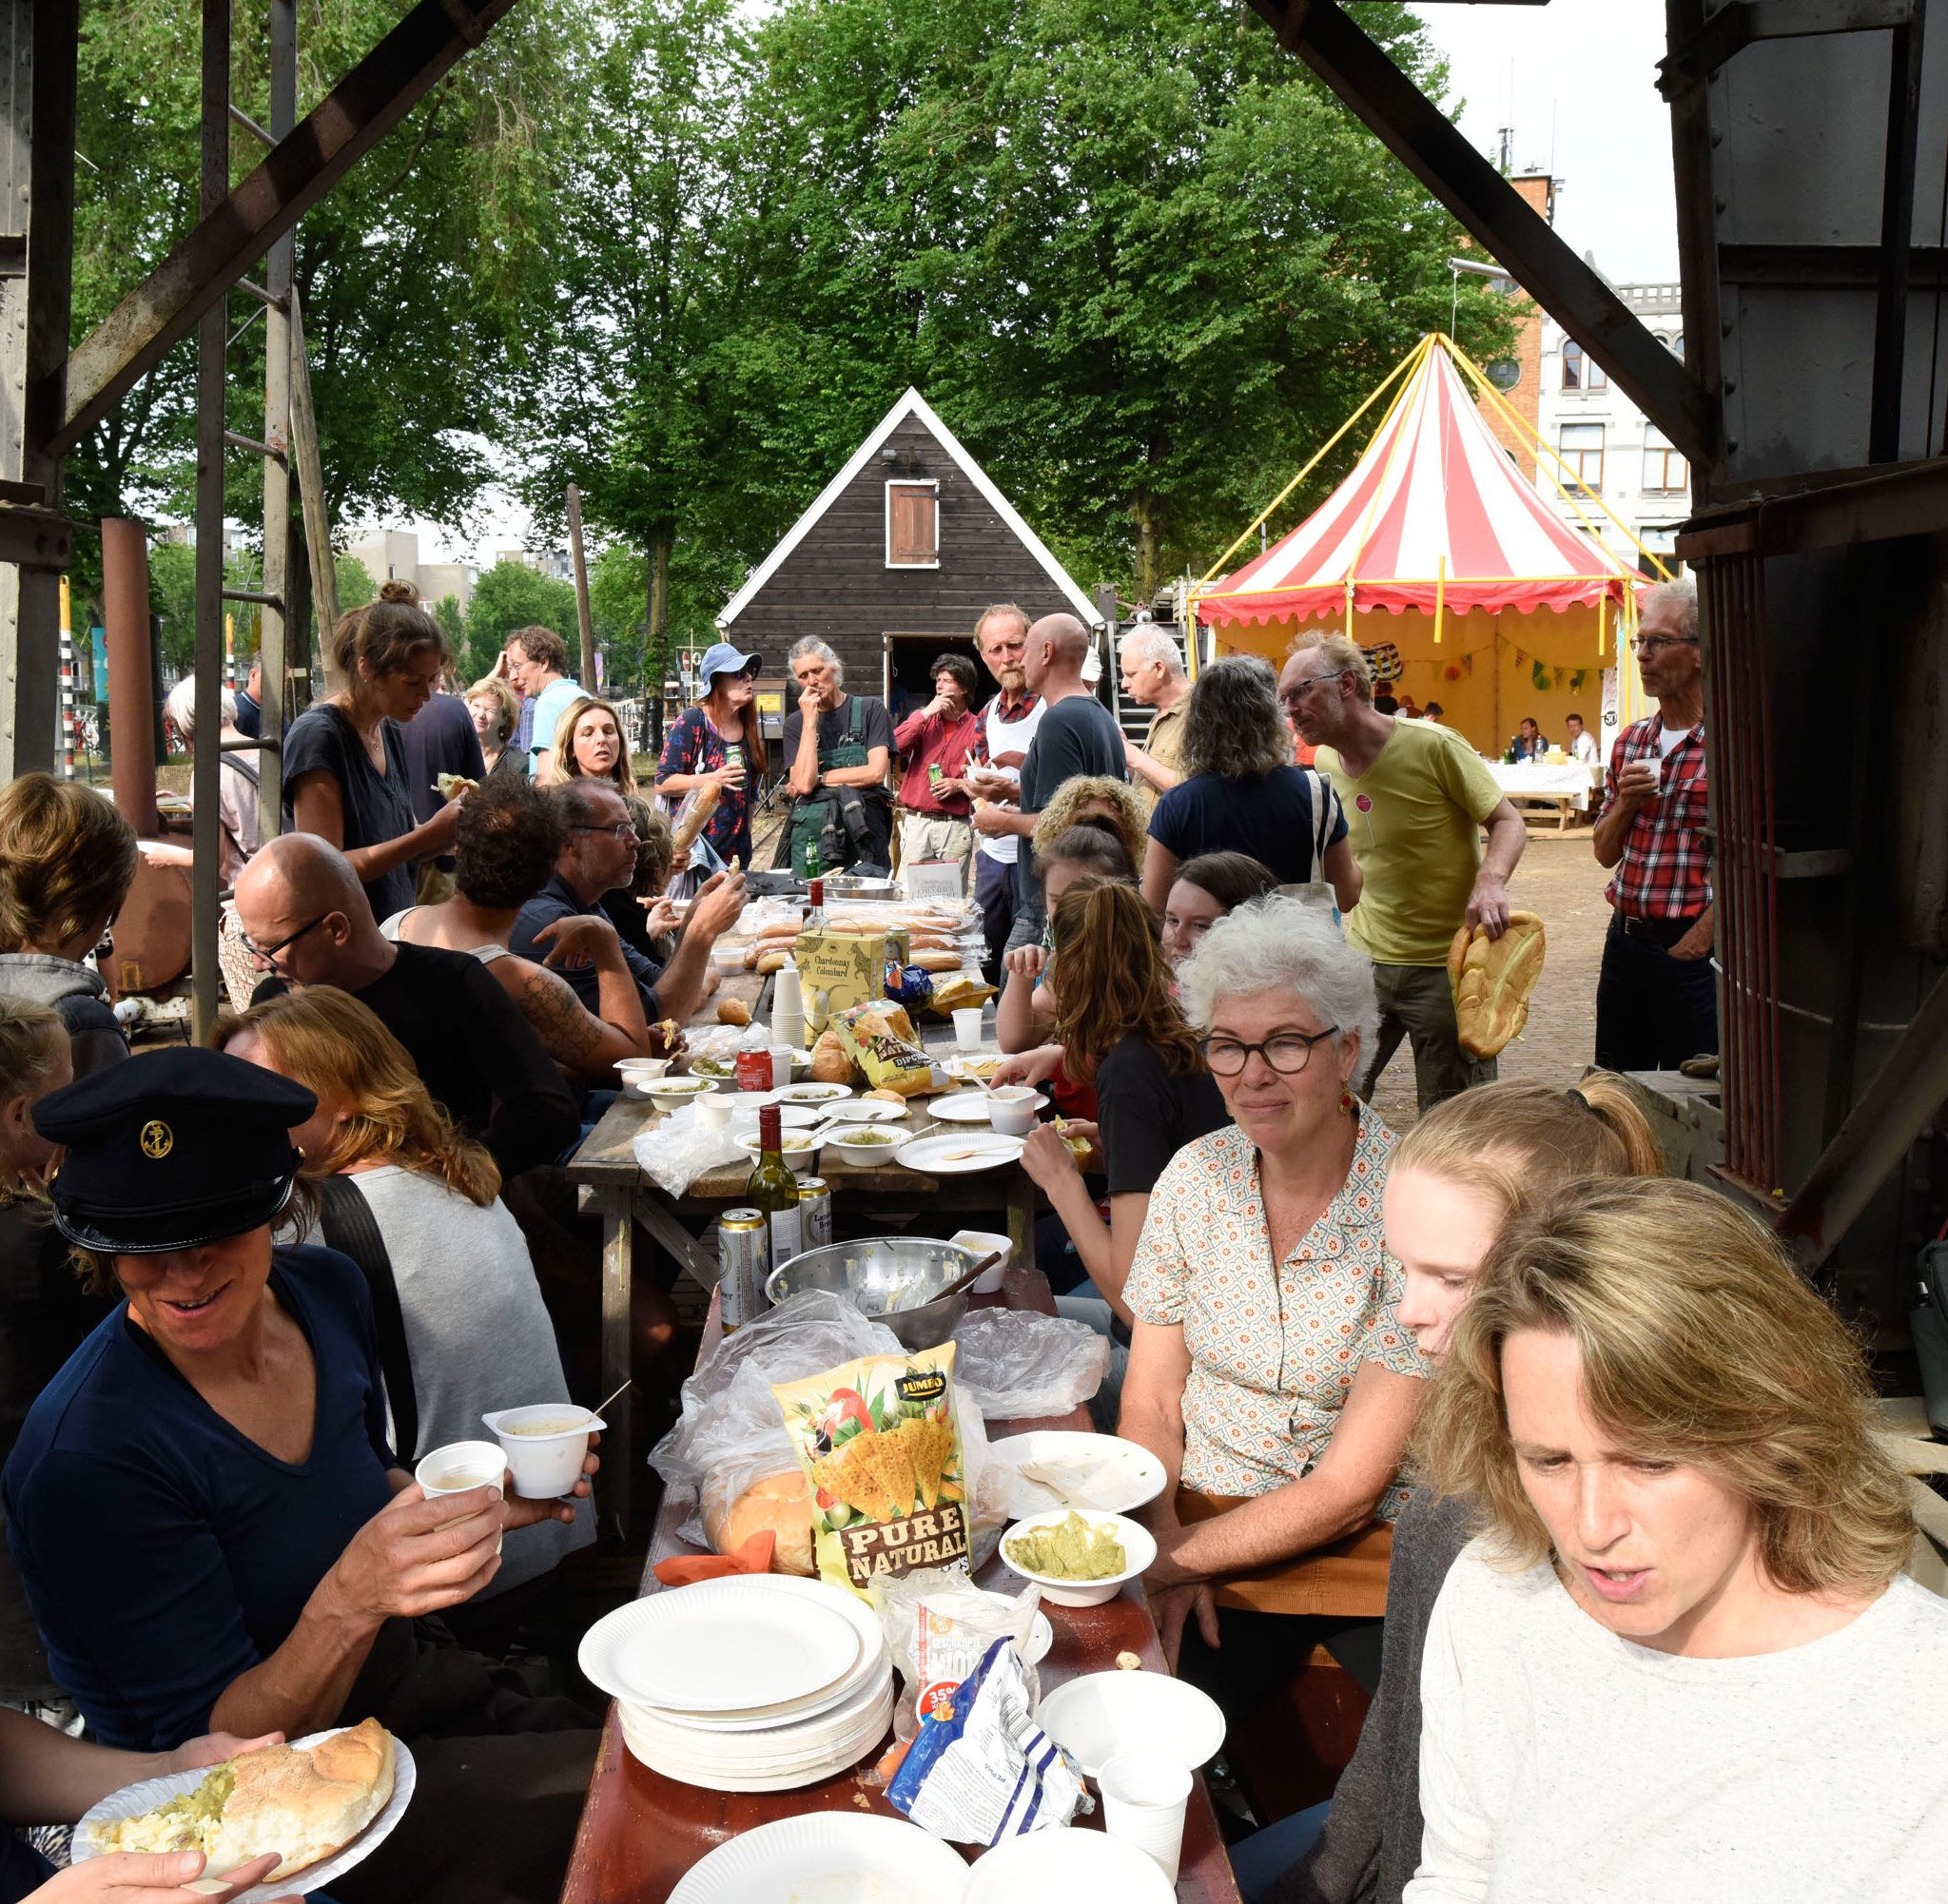 Eten, workshops en muziek lokten veel mensen naar de Manifestatie Koningspoort, een actie van Rotterdamse schippers voor behoud van de werf. (Foto Bart Lahr)